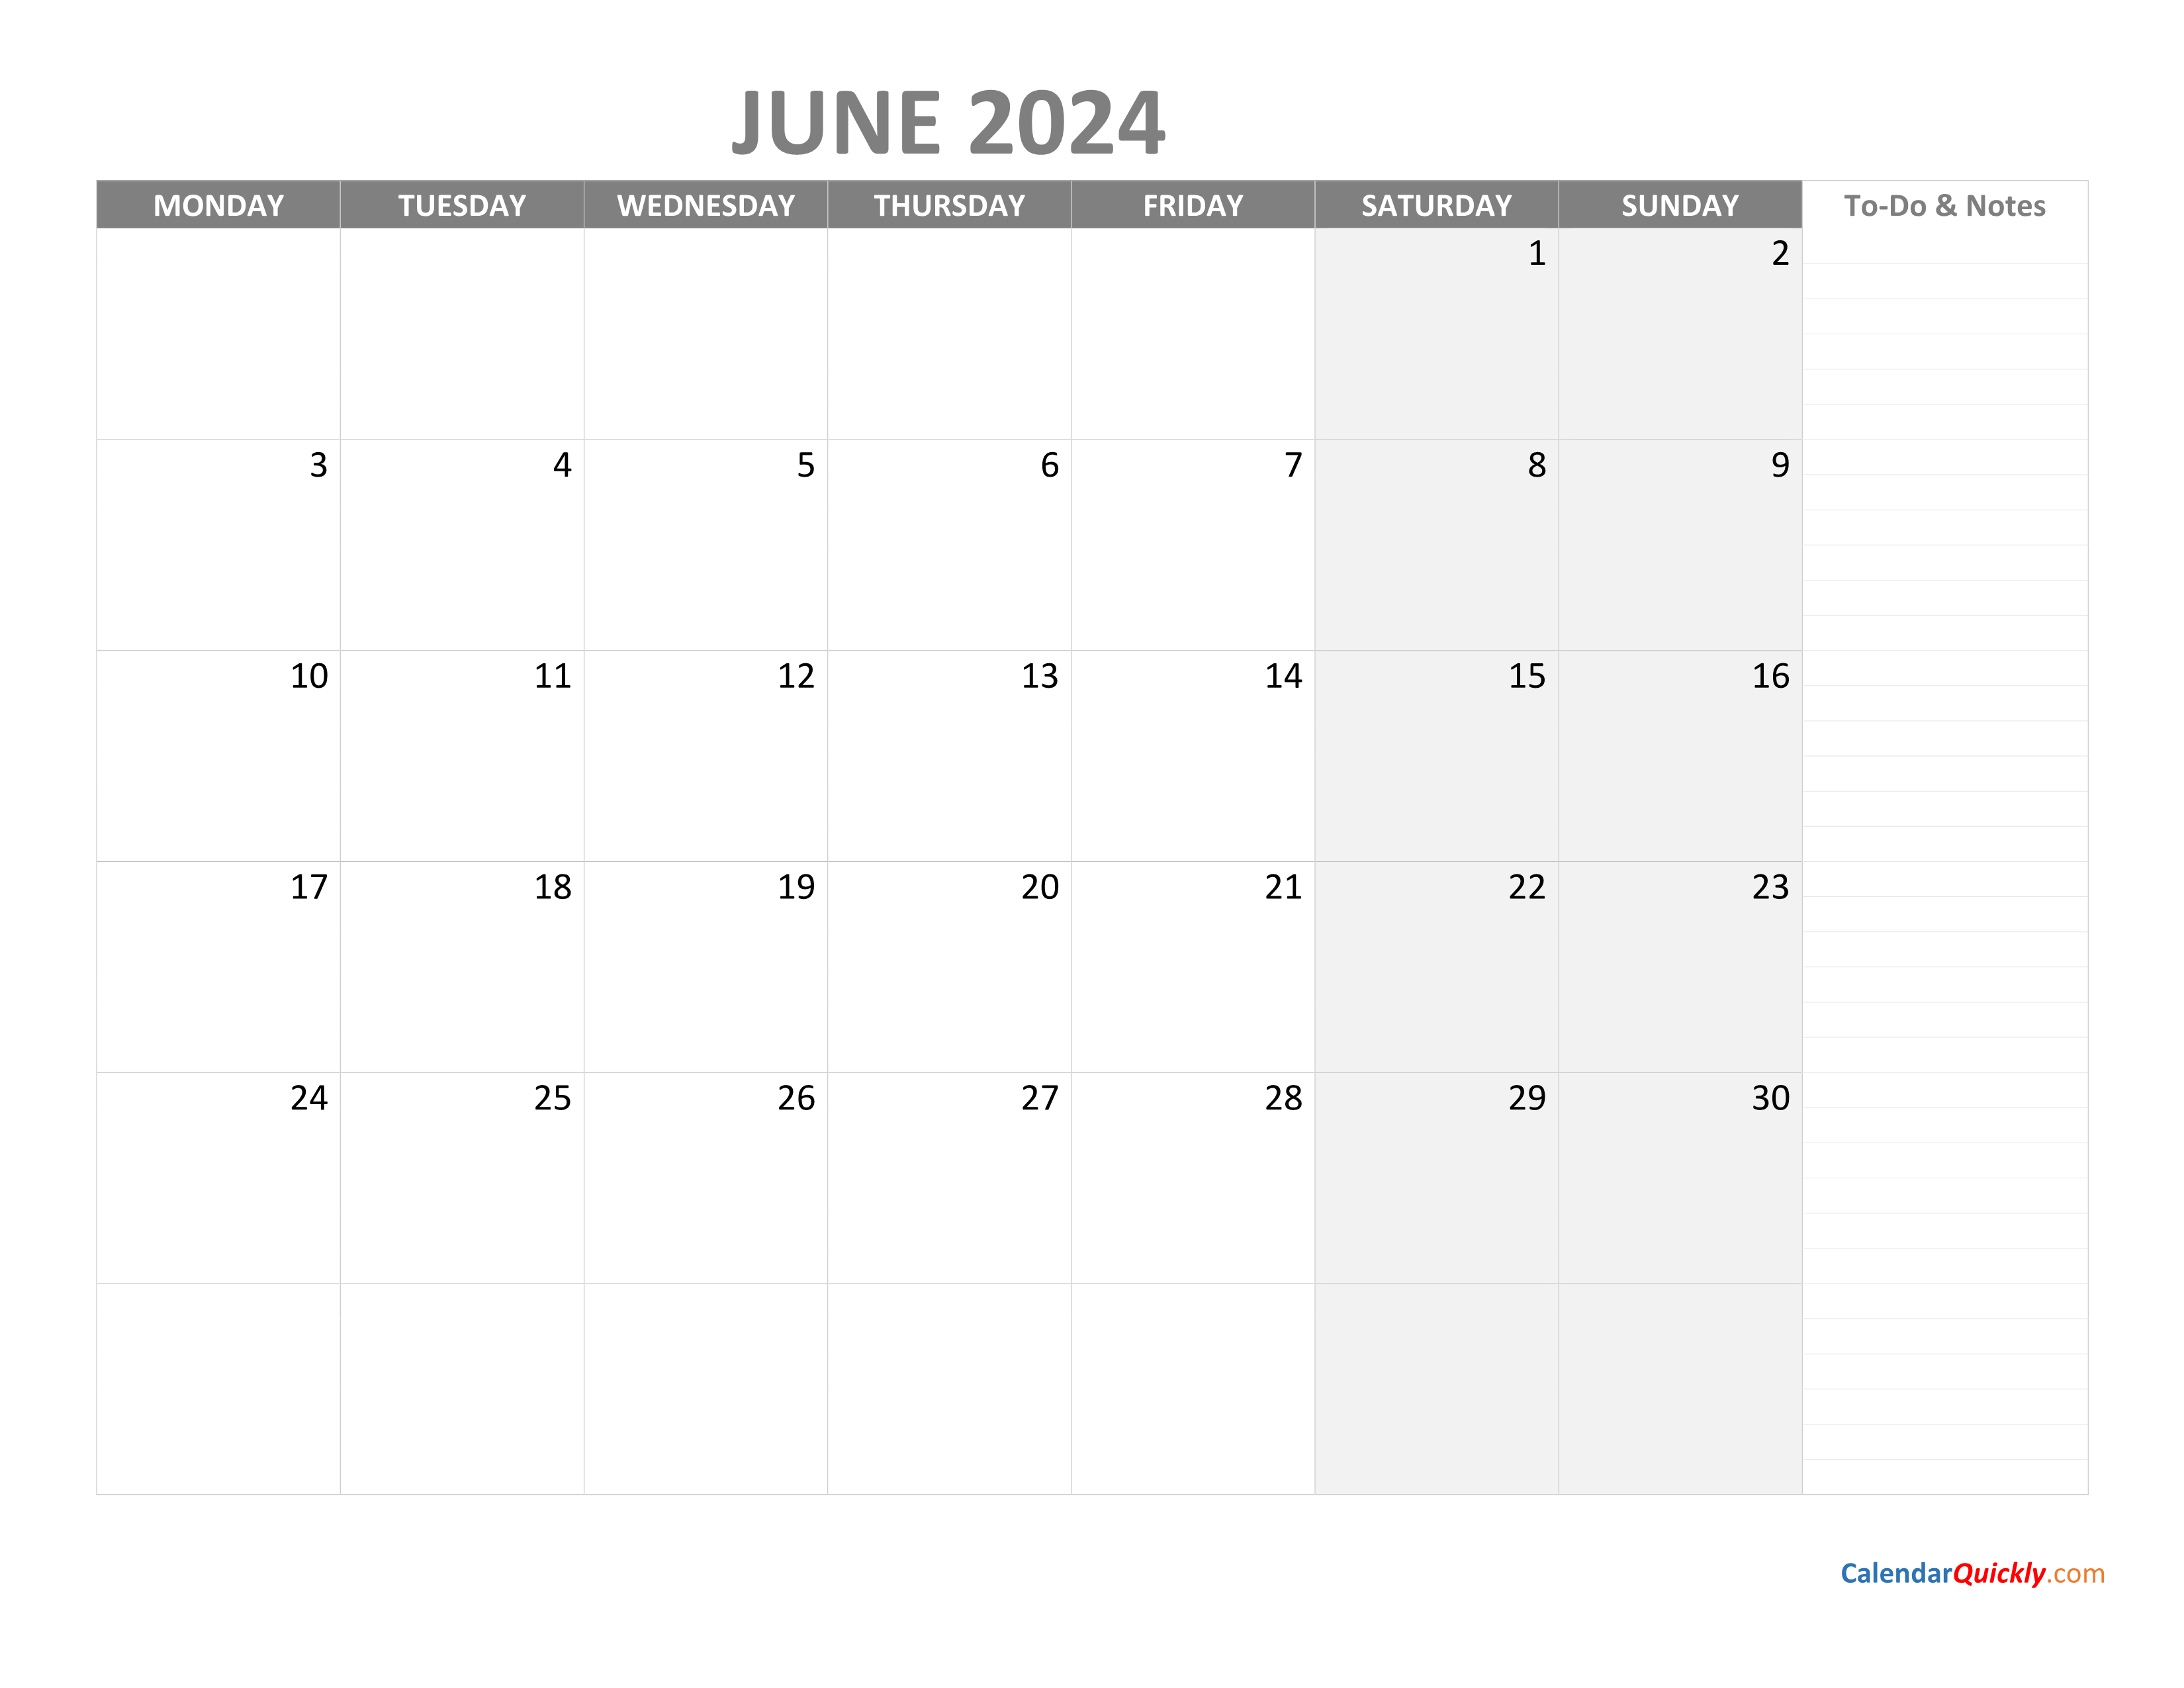 June Monday Calendar 2024 with Notes Calendar Quickly